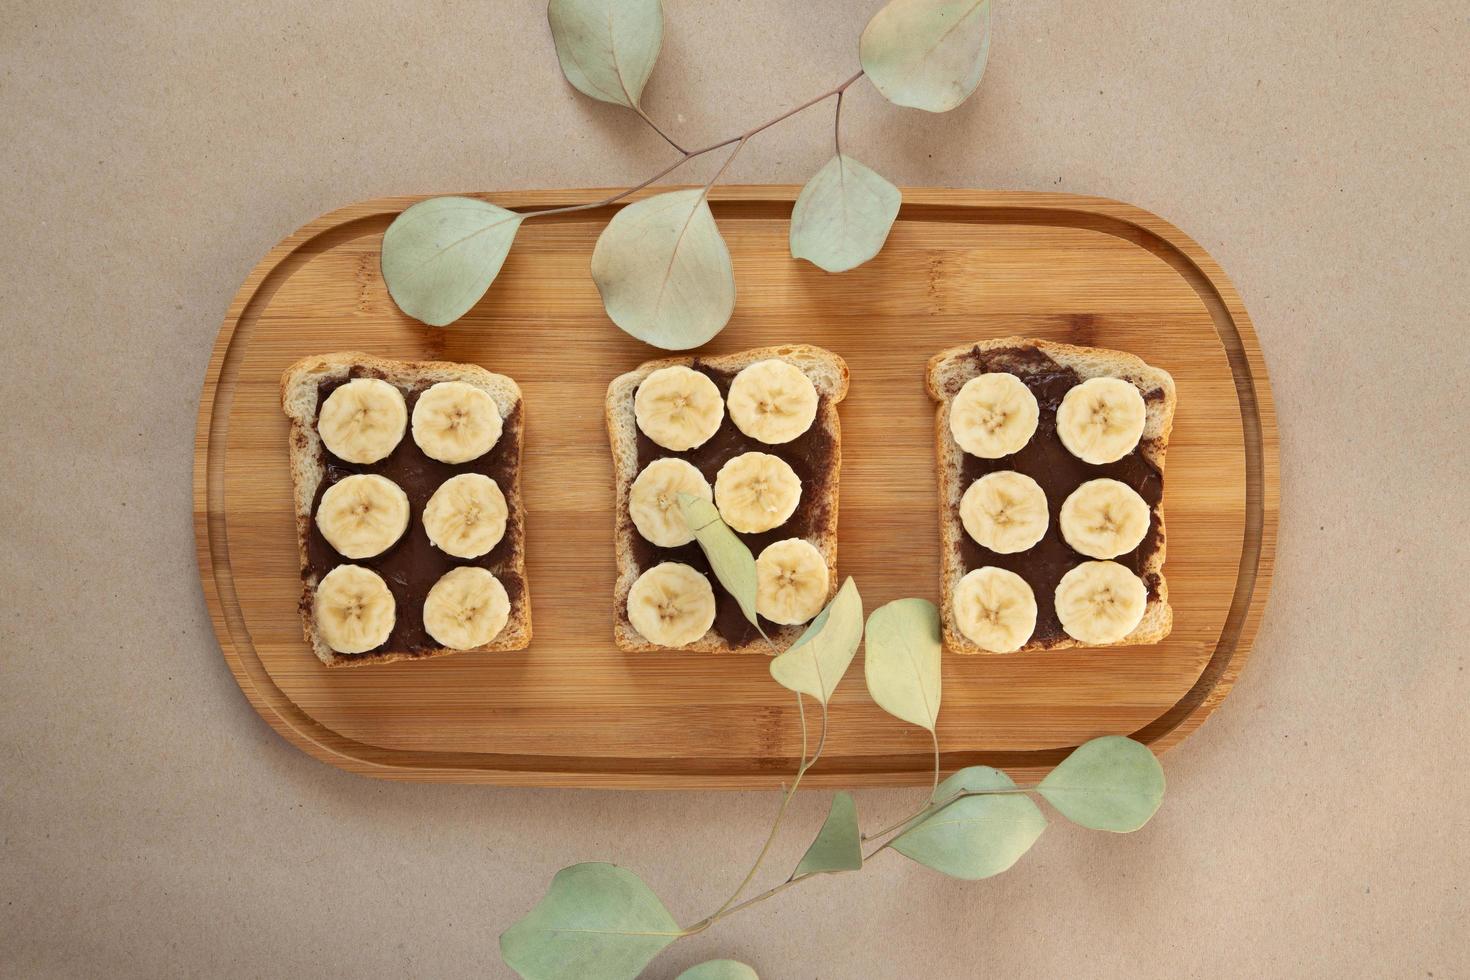 tre toast di pane bianco alla banana spalmati di burro al cioccolato foto